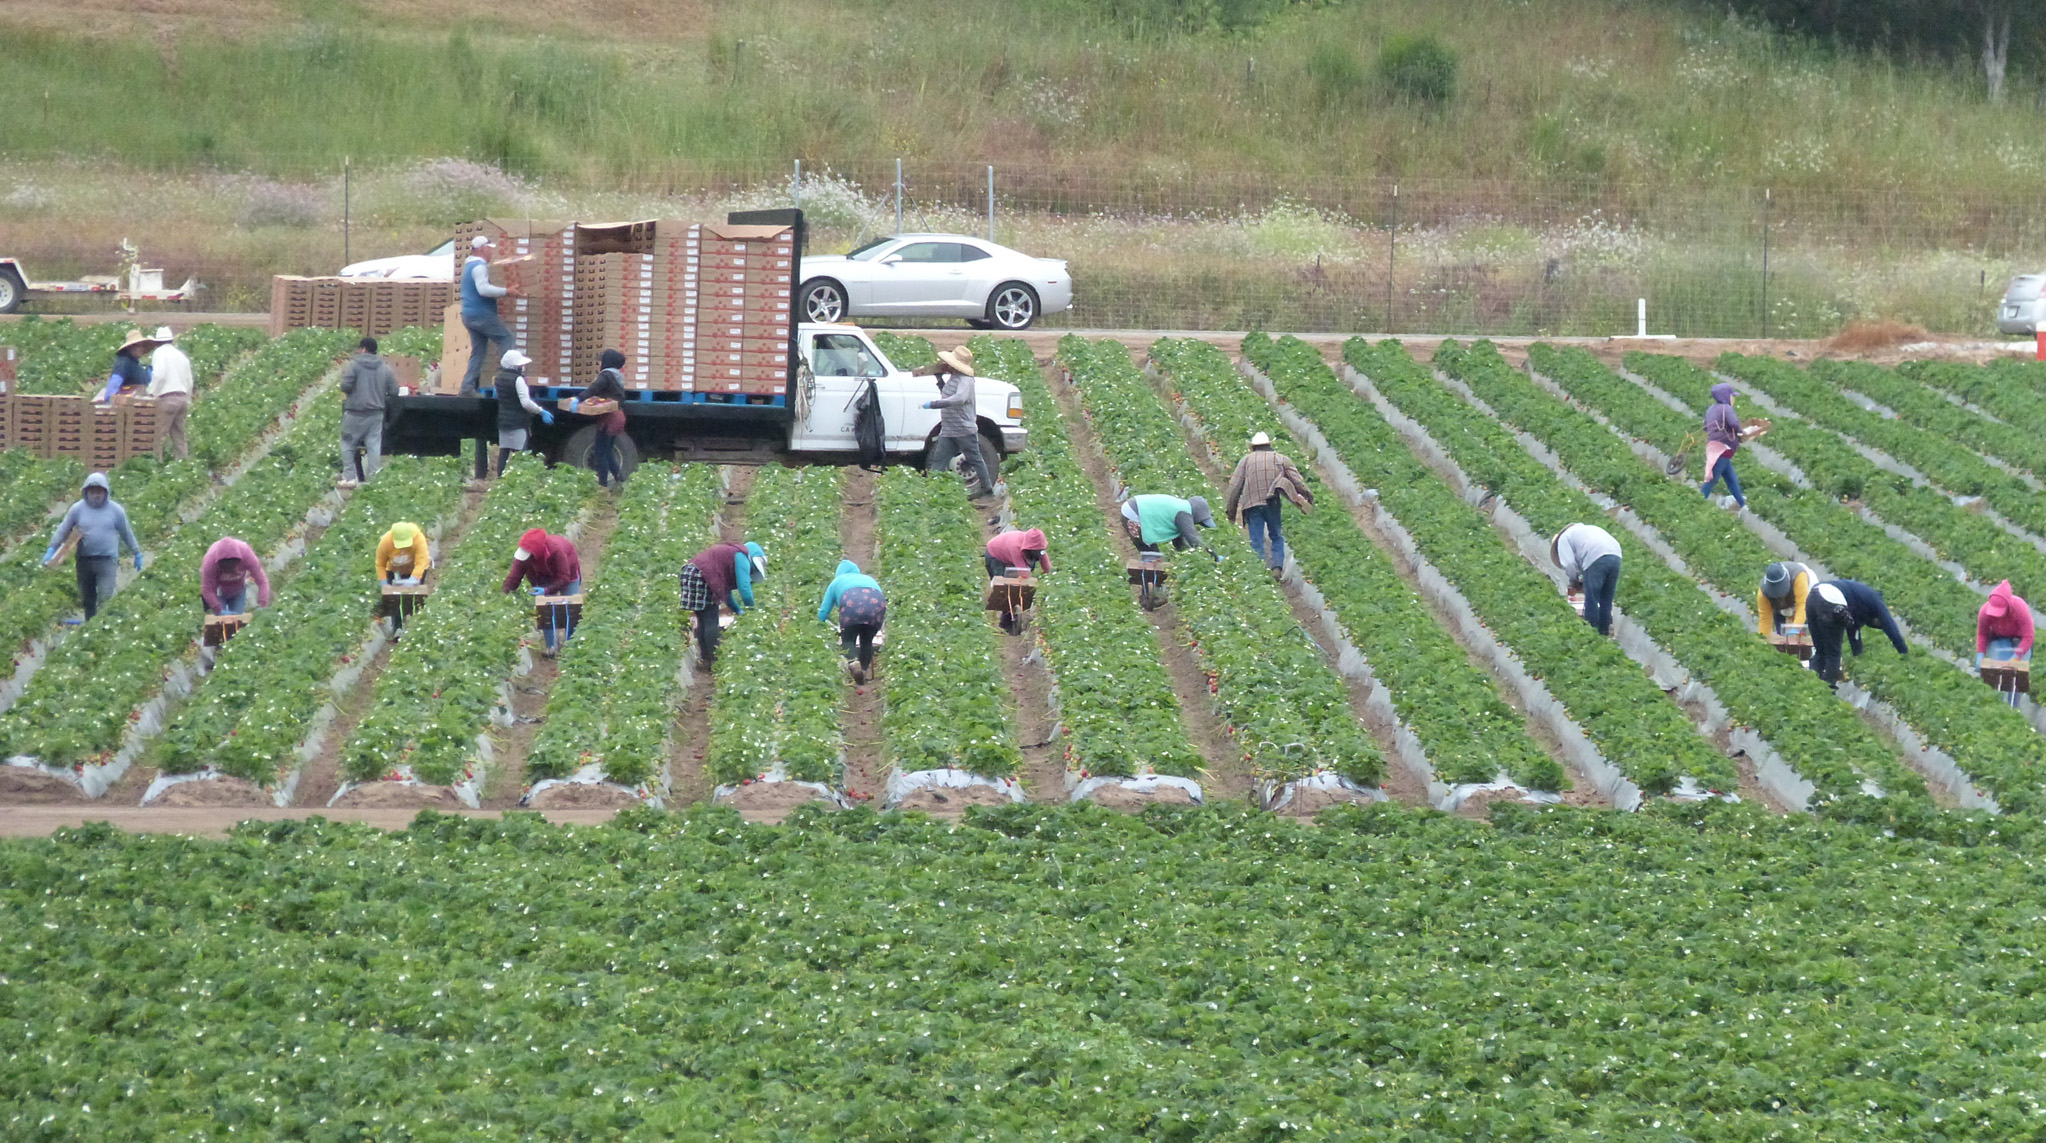 Los trabajadores recogen fresas en un campo cerca de Aromas, al sureste de Pájaro en el lado norte del río Pájaro, que no fue afectado por las inundaciones. Crédito: Liza Gross